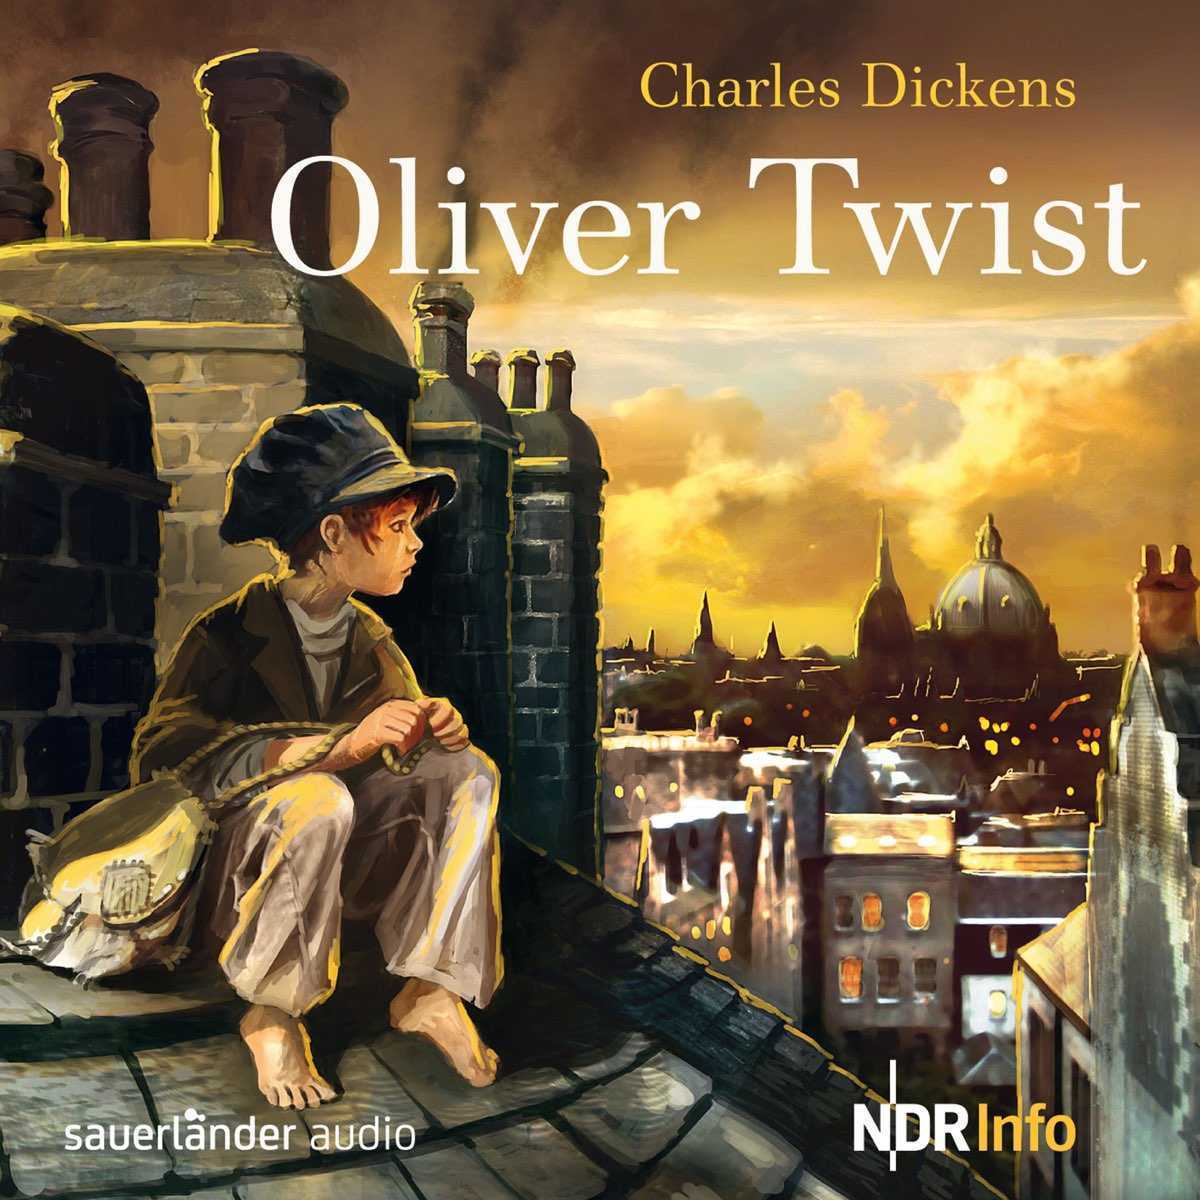 Приключения оливера твиста краткое. Dickens Charles "Oliver Twist". Charles Dickens Oliver Twist book. Приключения Оливера Твиста обложка.